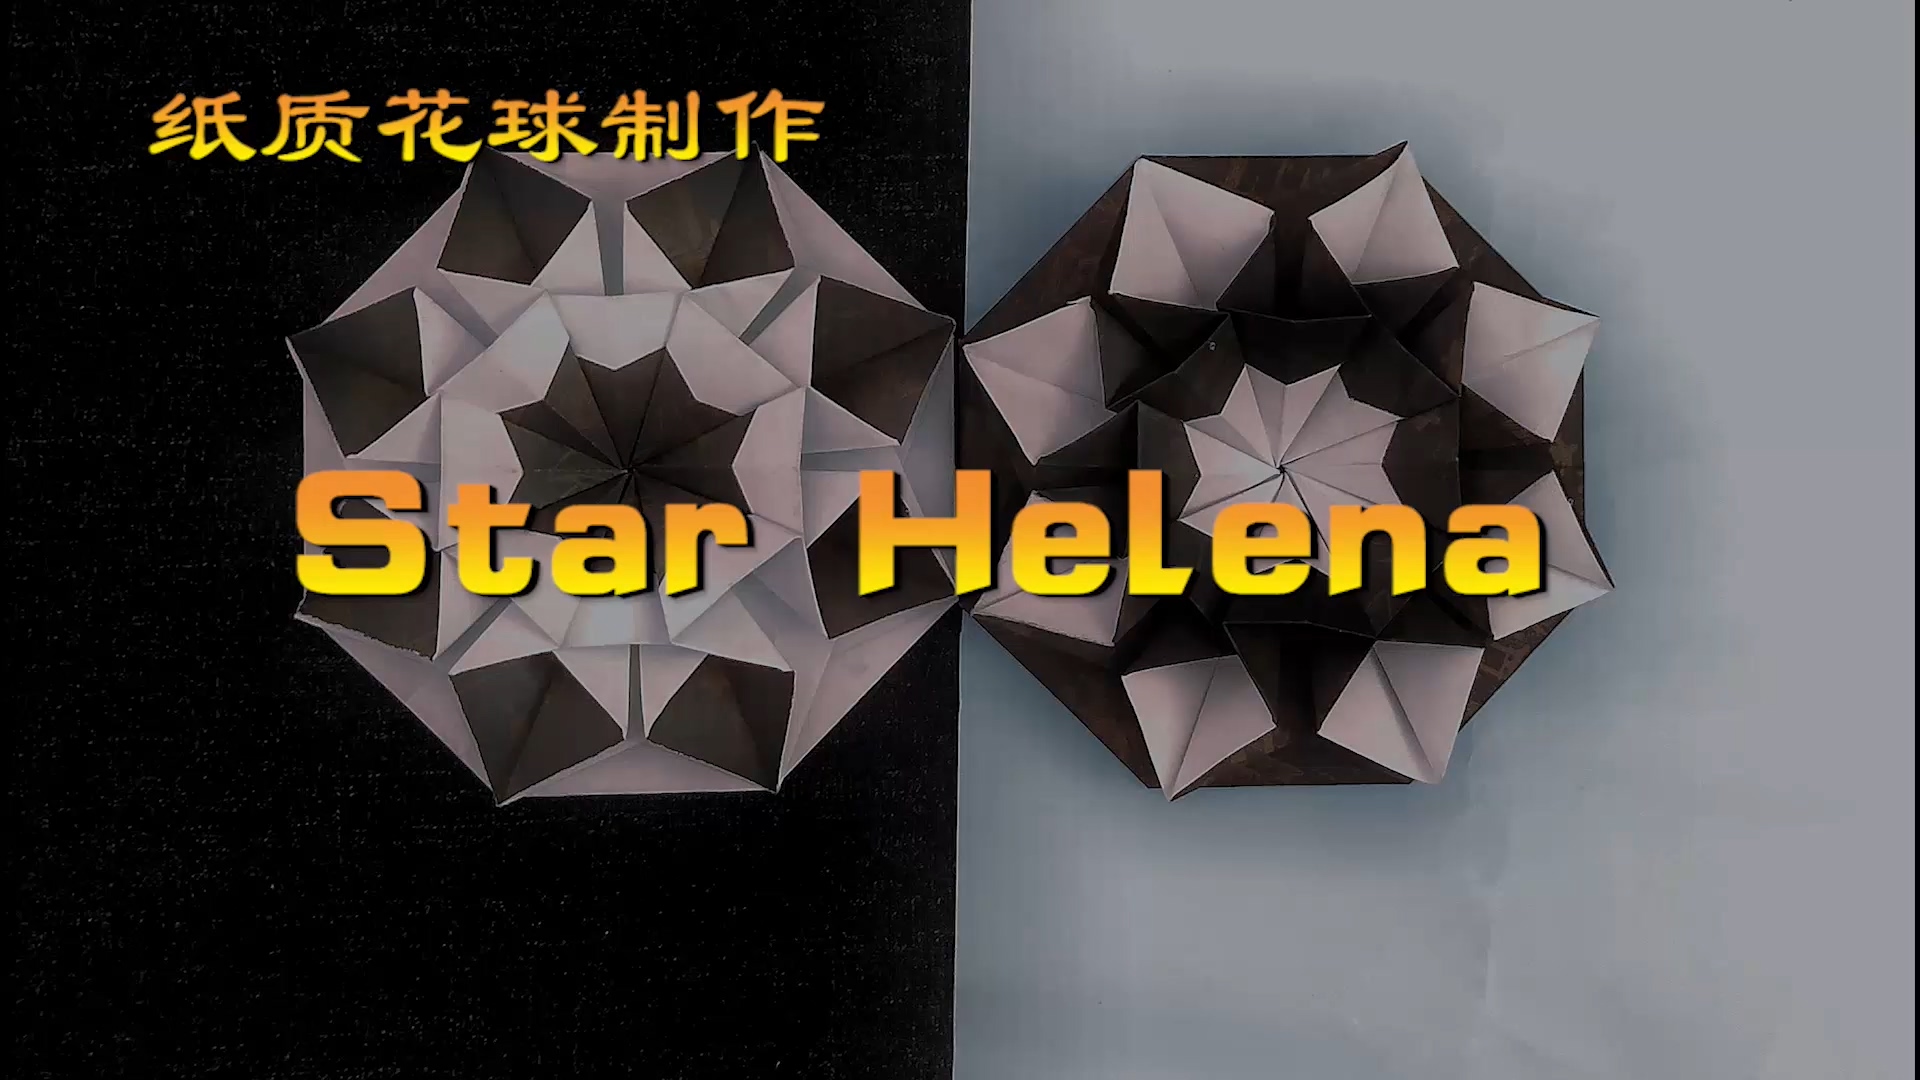 神奇海螺的花球教程37 Star Helena